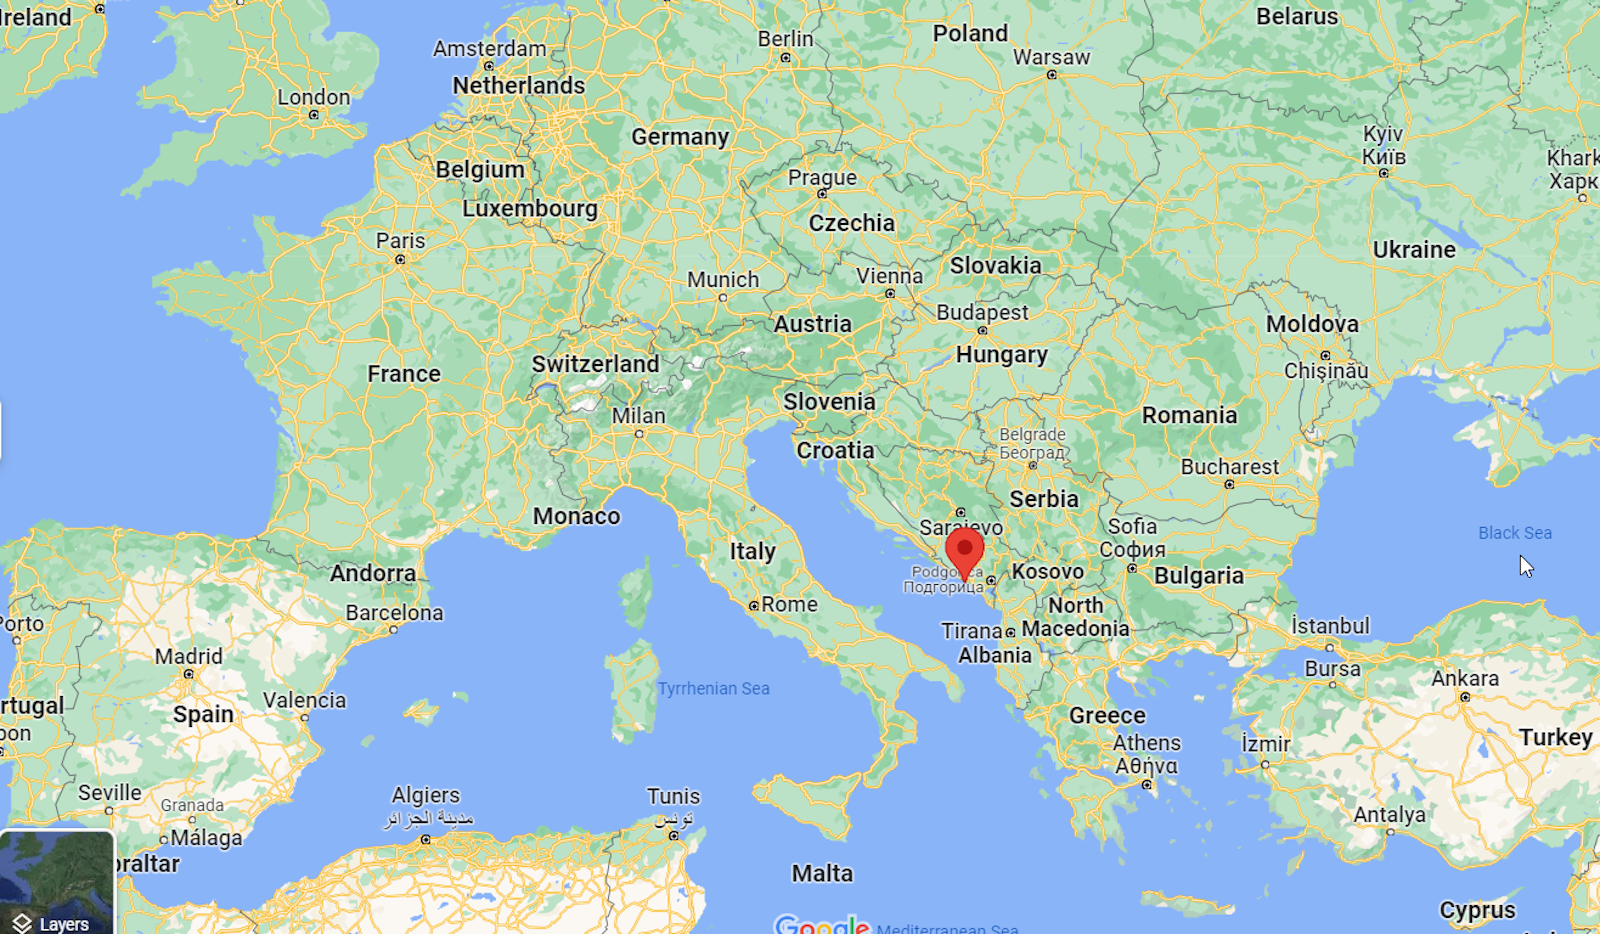 La actual ciudad de Herceg Novi se encuentra en la orilla oriental del mar Adriático, en el país del sur de Europa, Montenegro. En su día fue sede de una diócesis católica, pero muchos de los detalles se han perdido en la historia. (Google Maps)